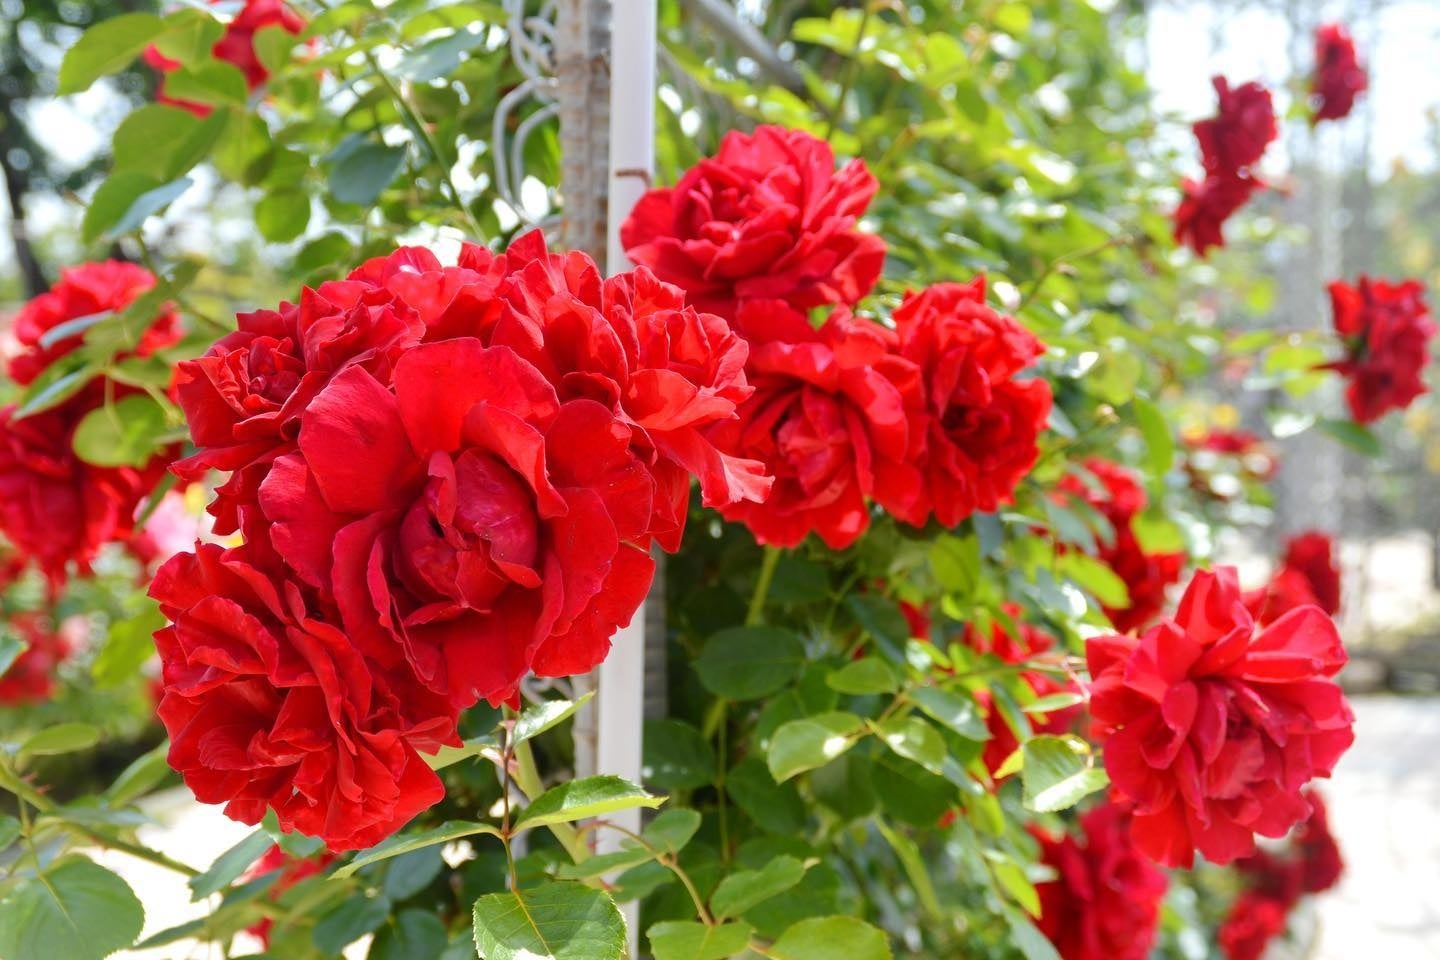 大きな紅色の花が圧巻なつるバラ「ダイナマイト」